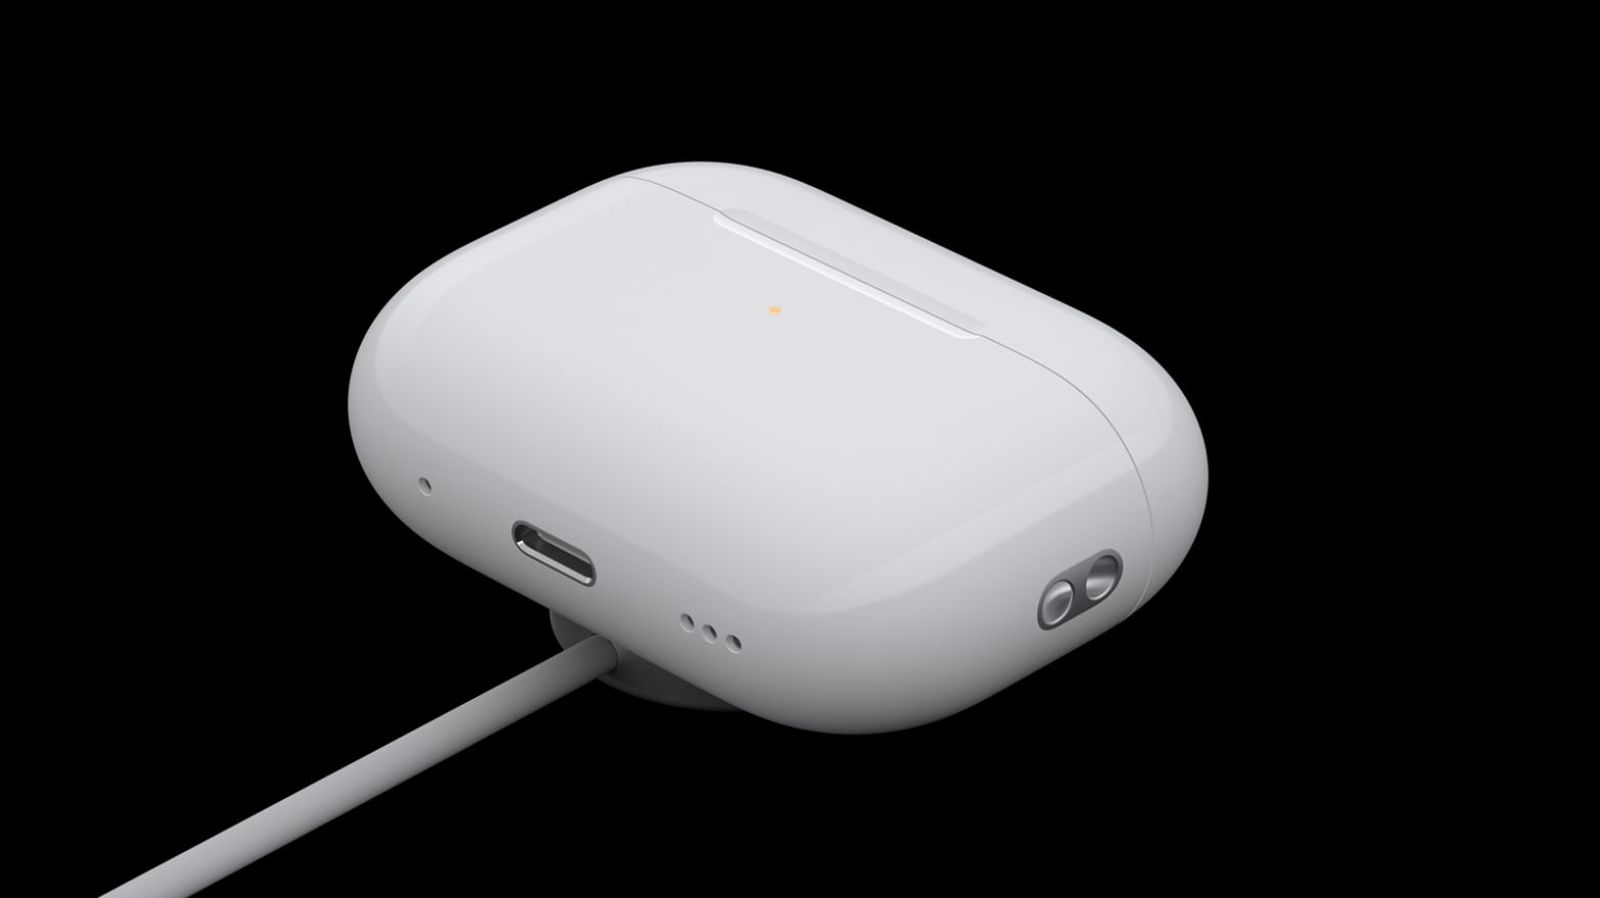 من iPhoneIslam.com، علبة شحن لاسلكية بيضاء لسماعات AirPods 4 مع ضوء مؤشر LED، متصلة بكابل شحن، على خلفية سوداء.